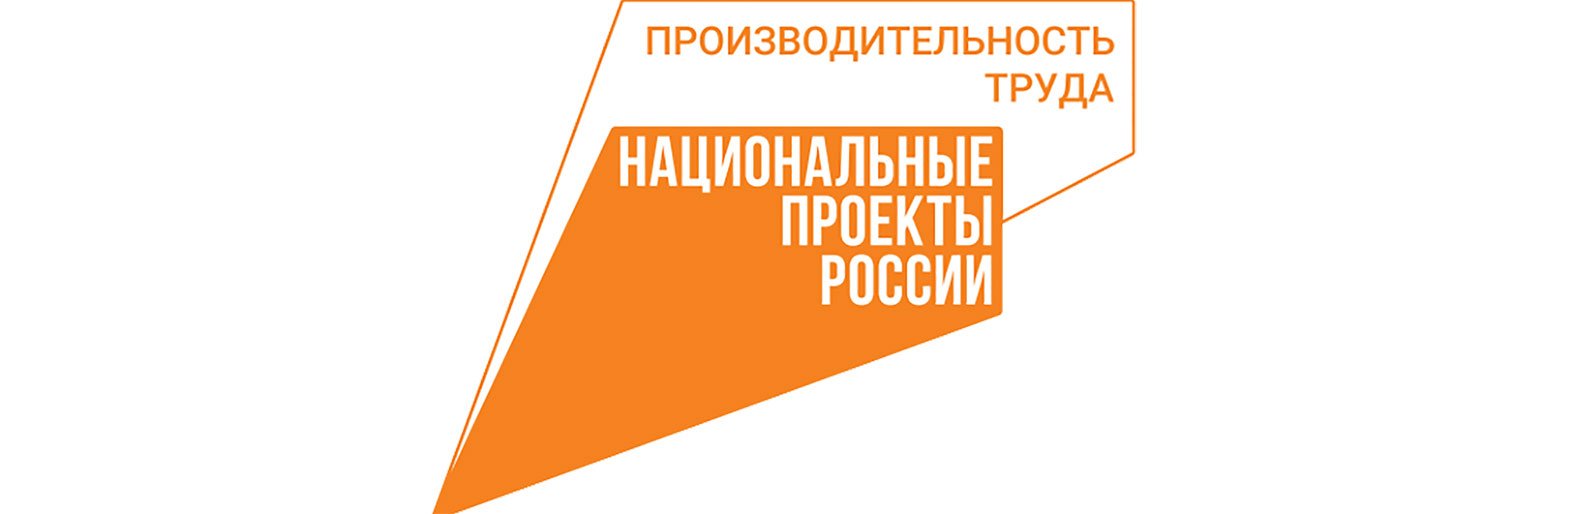 Представители Белгородской области приняли участие в сертификации РЦК Сахалинской области